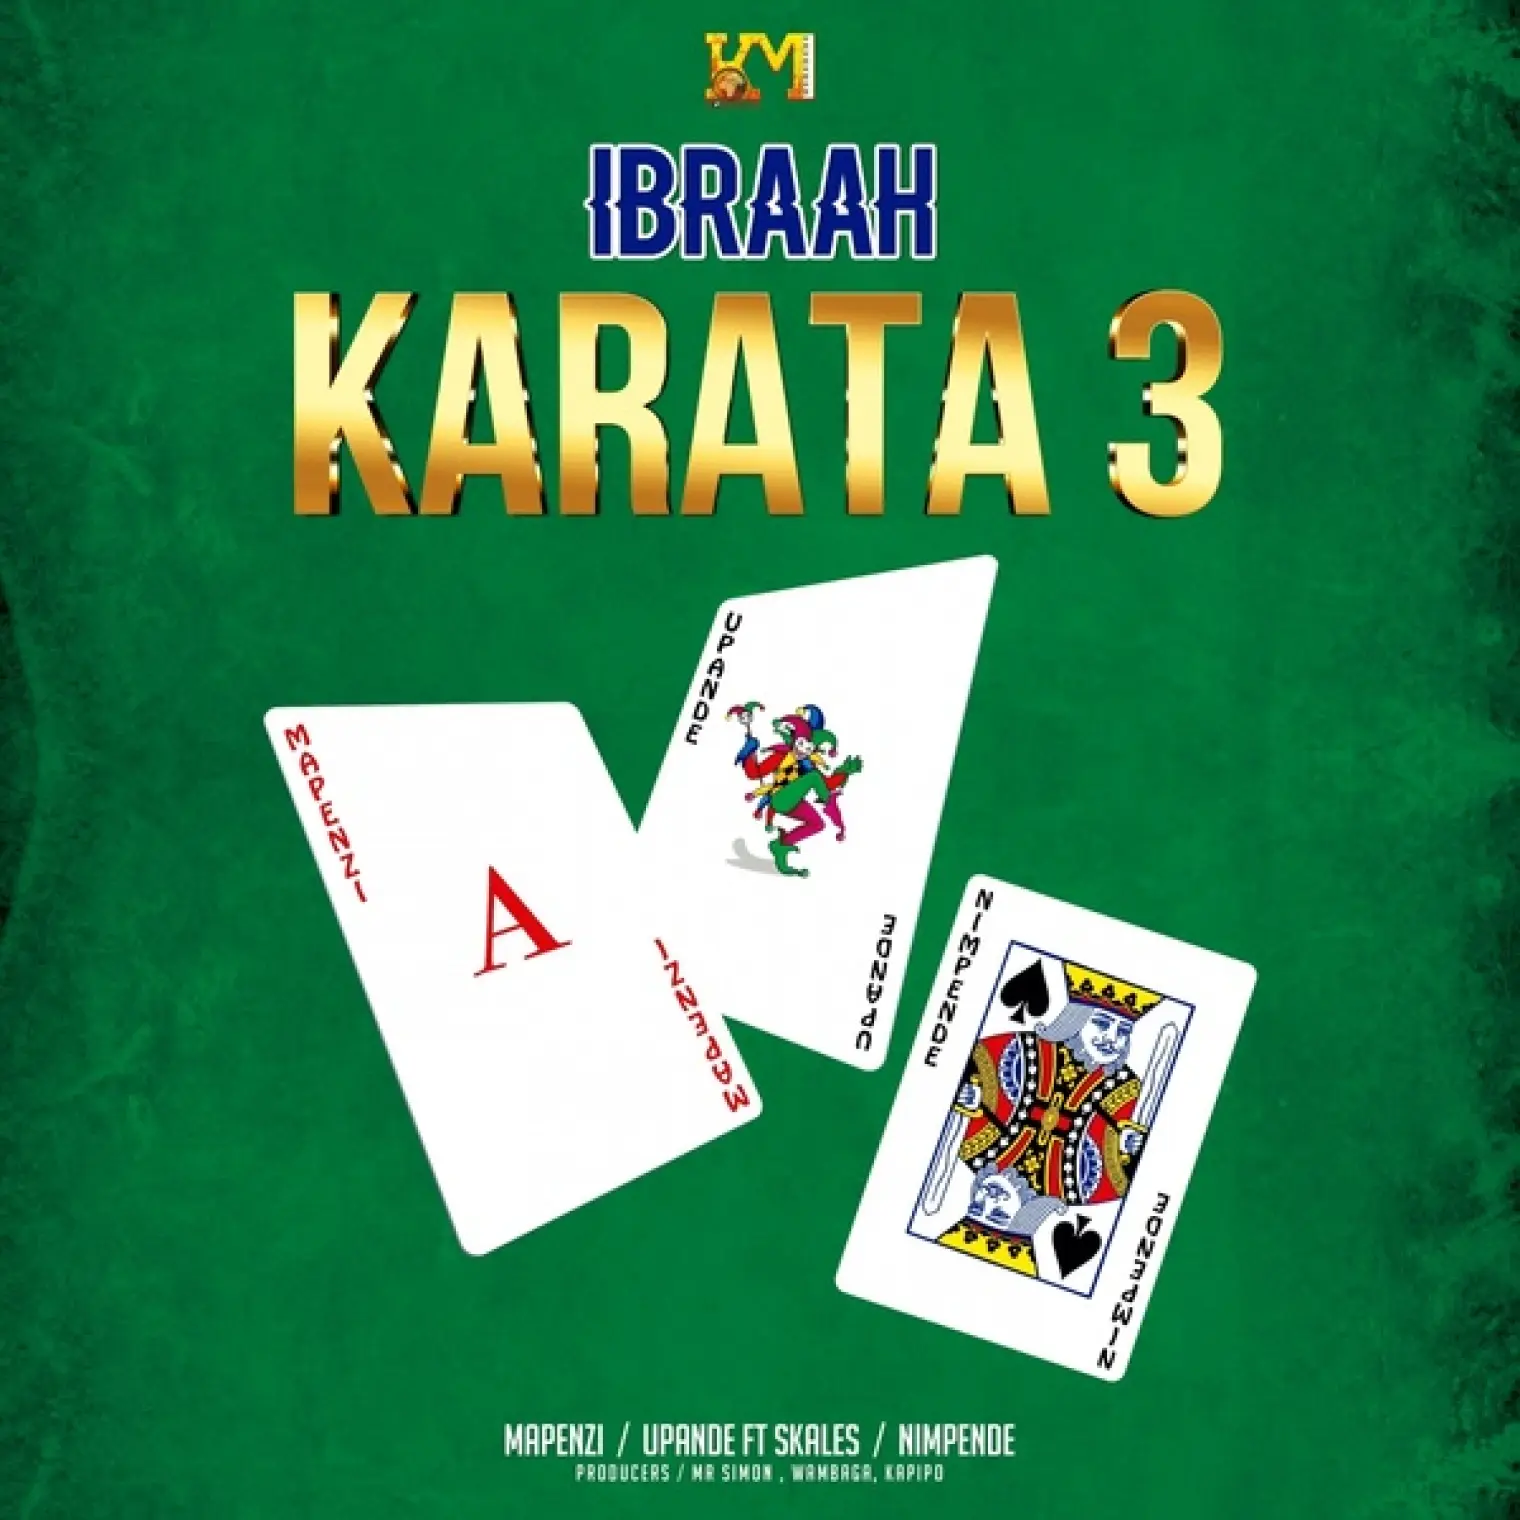 Karata 3 -  Ibraah  